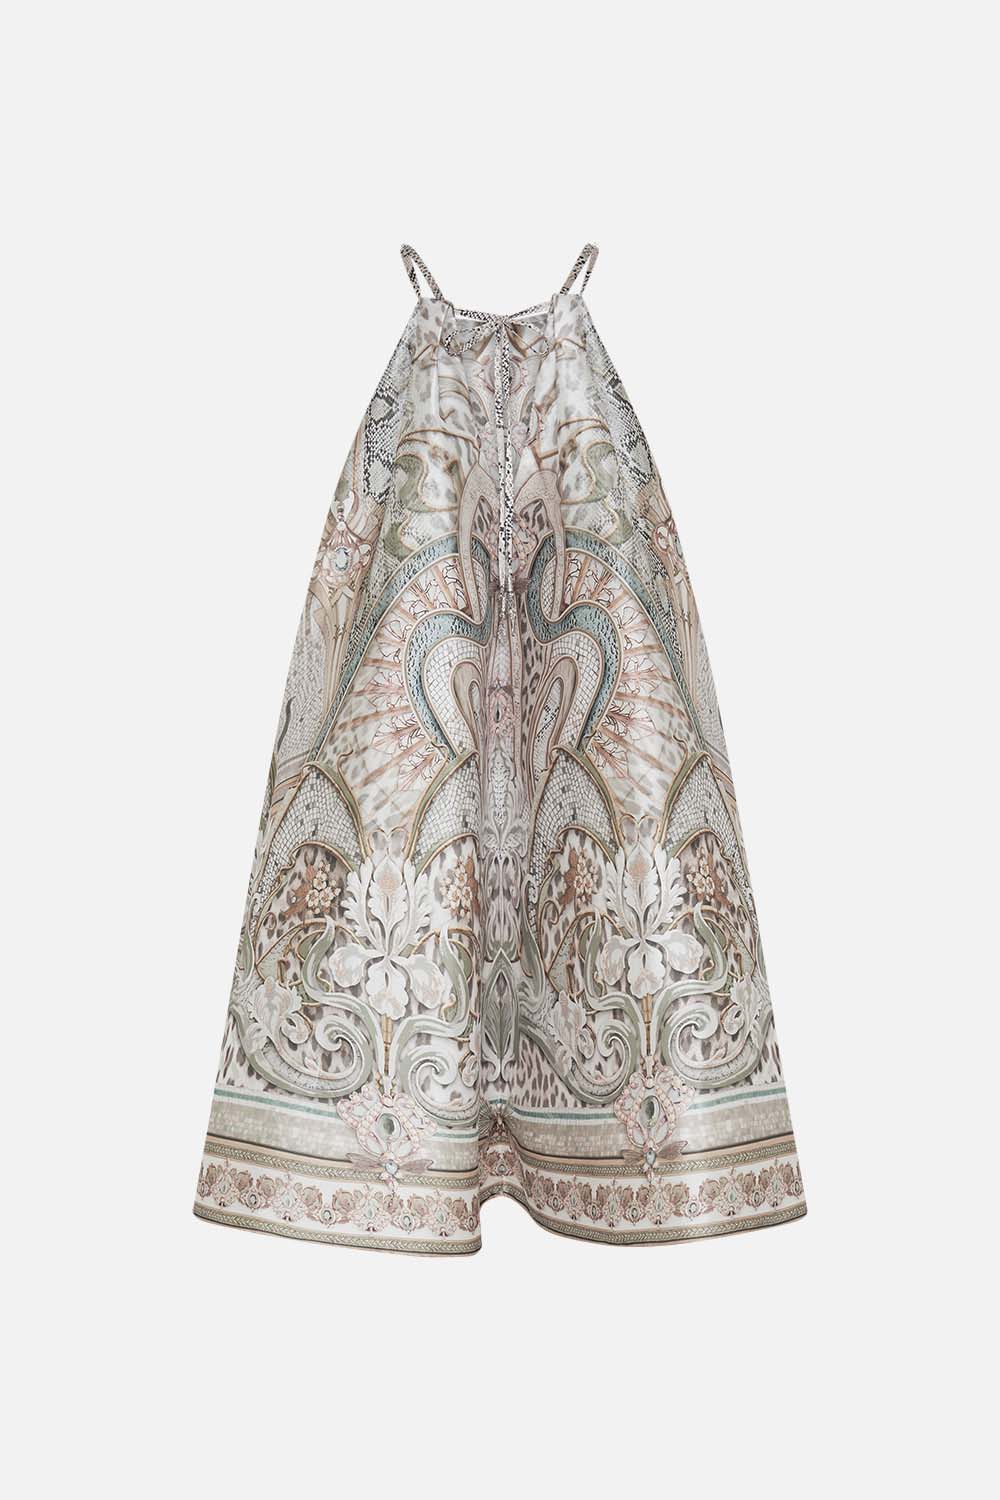 CAMILLA mini dress in Ivory Tower Tales oprint